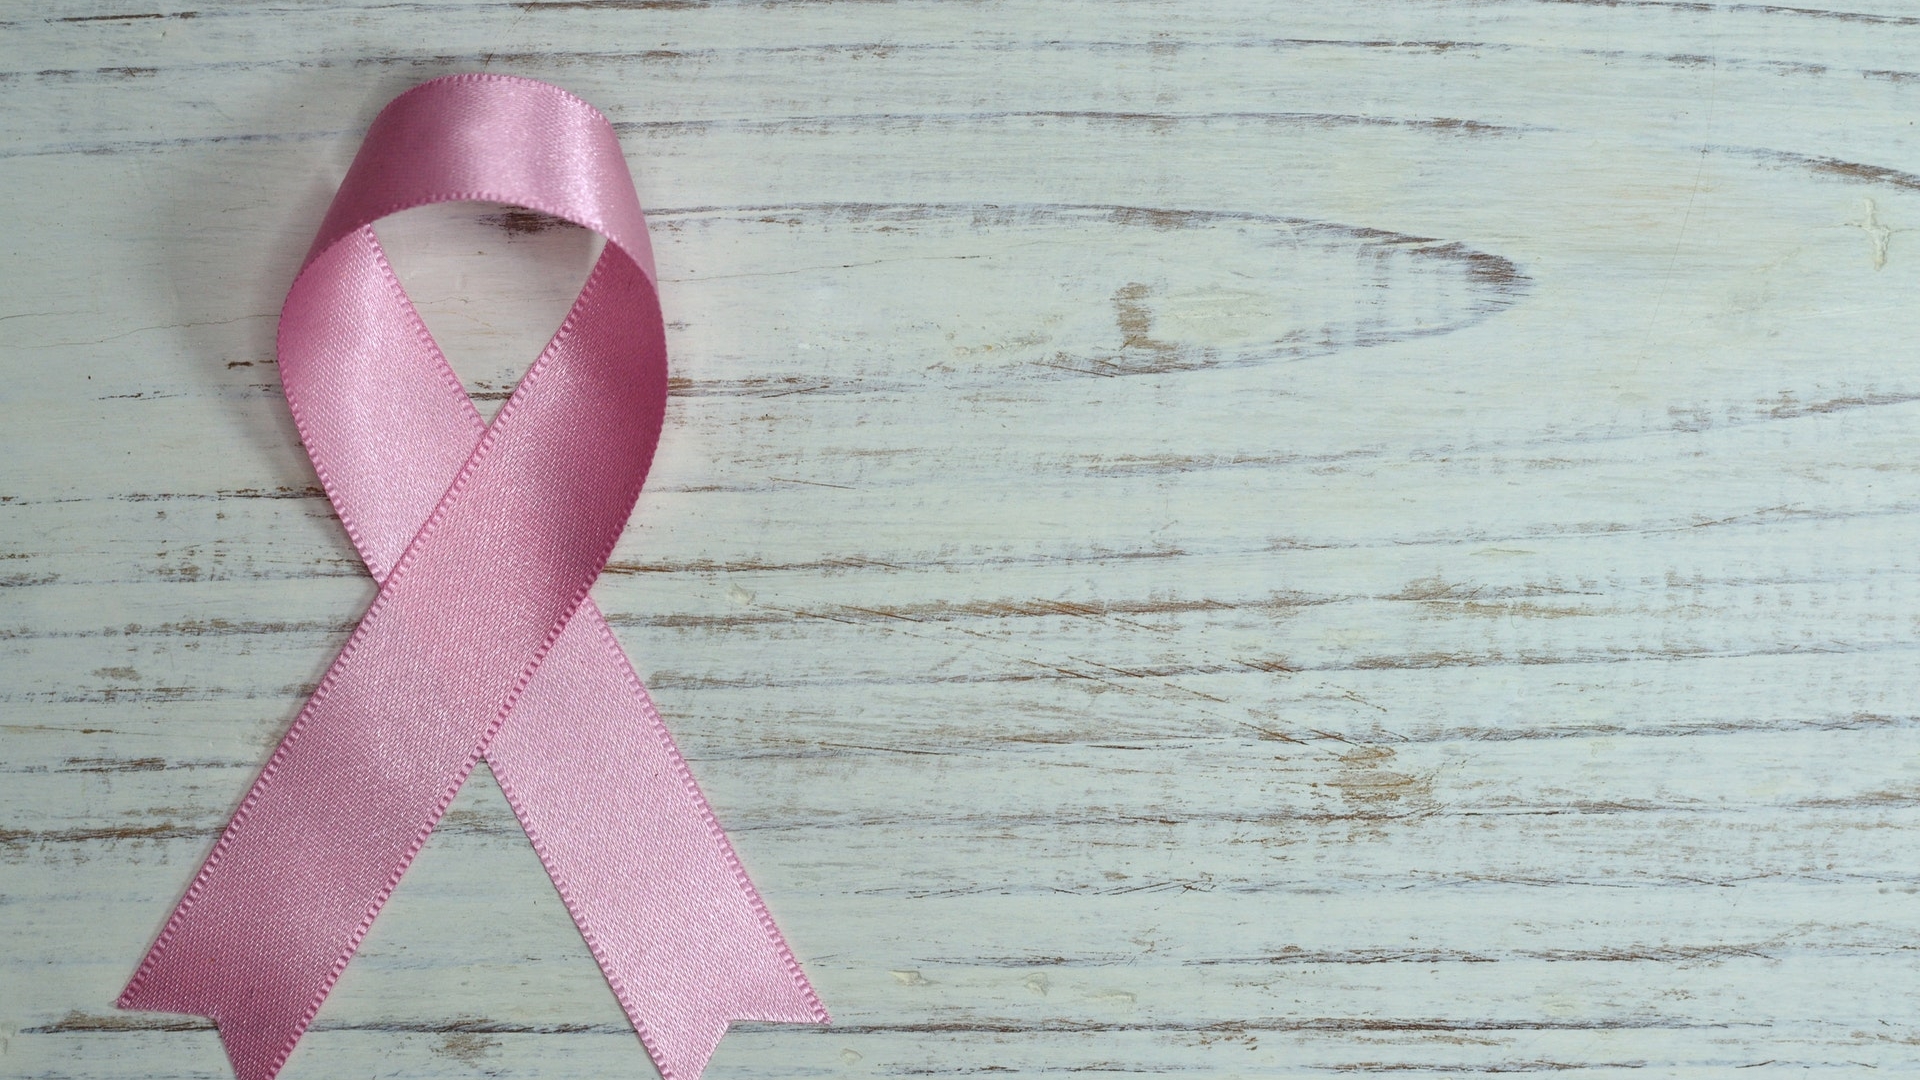 Kanker pink ribbon